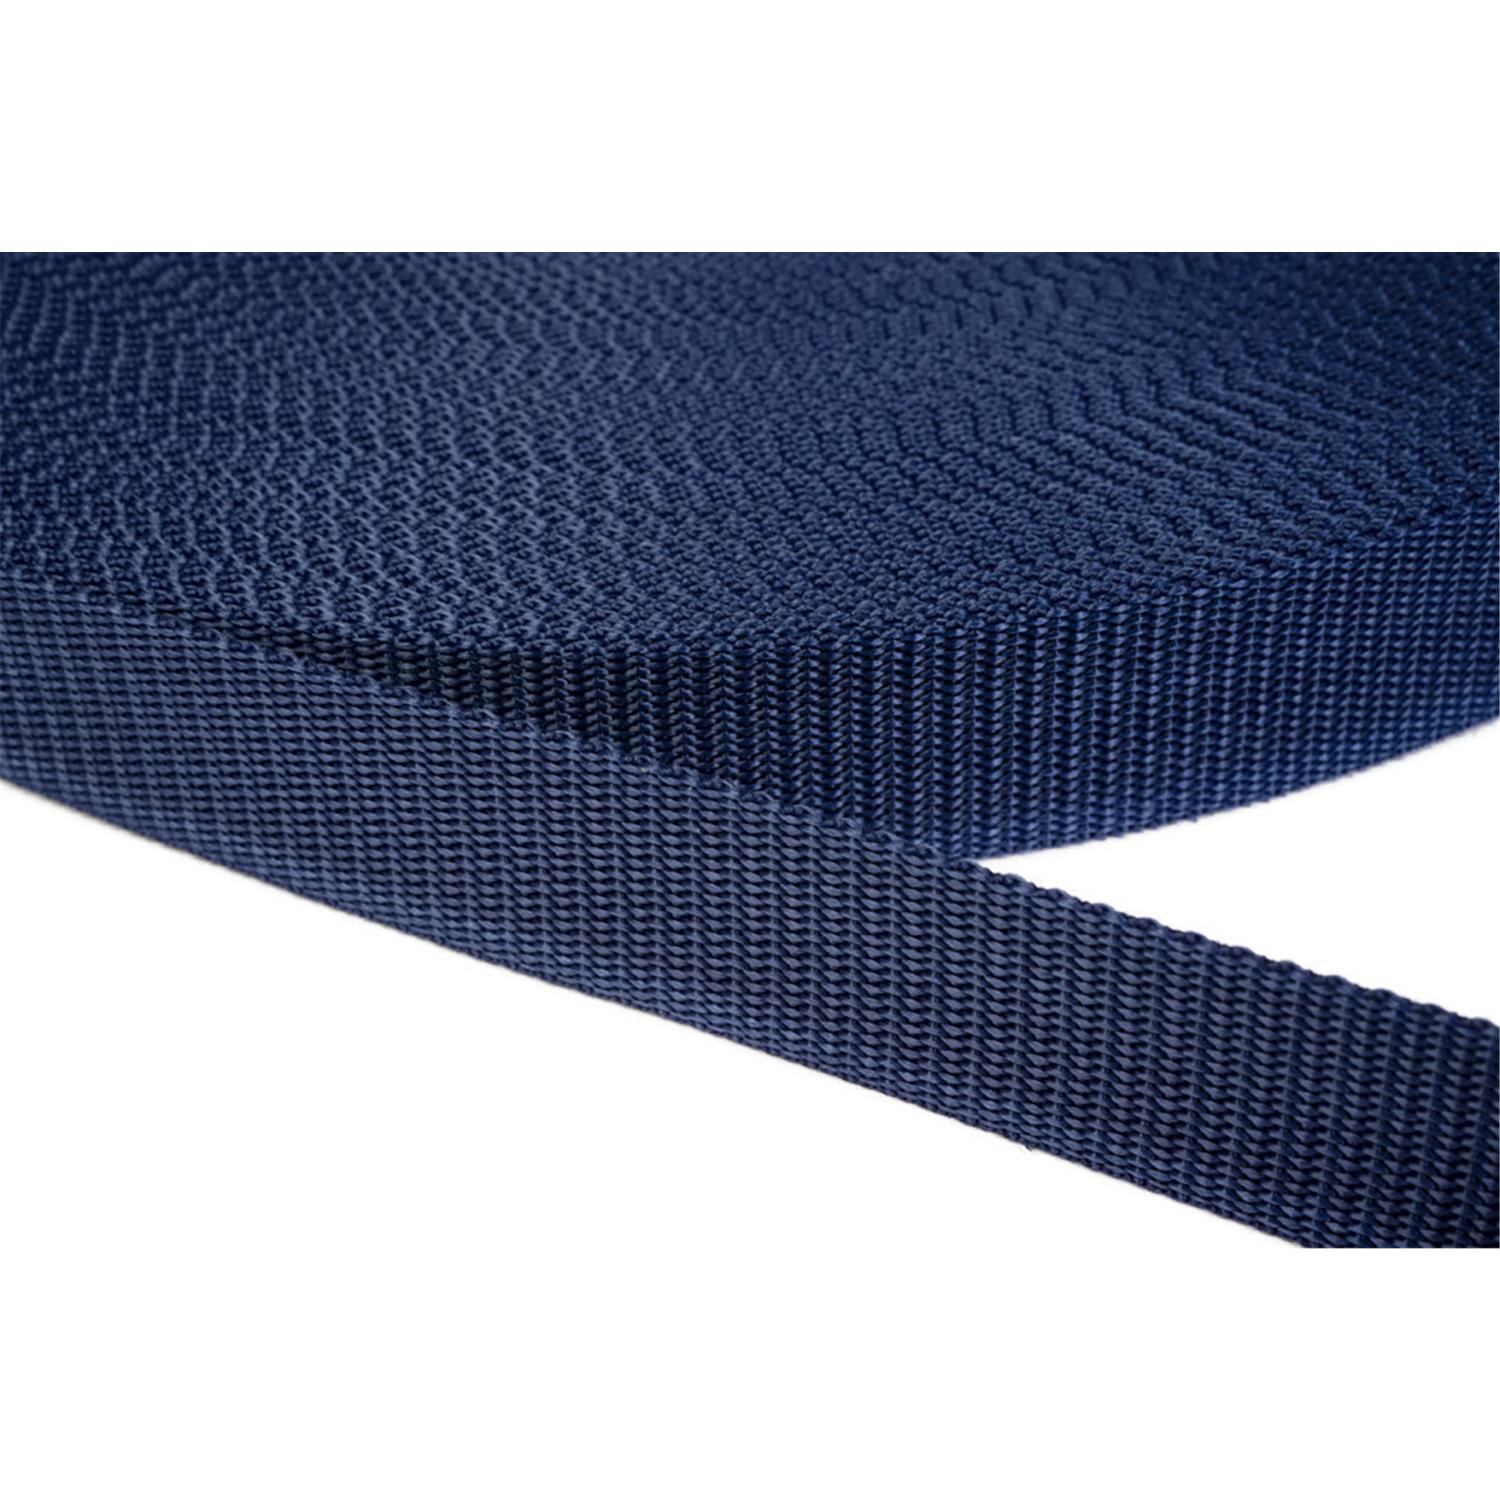 Gurtband 15mm breit aus Polypropylen in 41 Farben 27 - dunkelblau 12 Meter